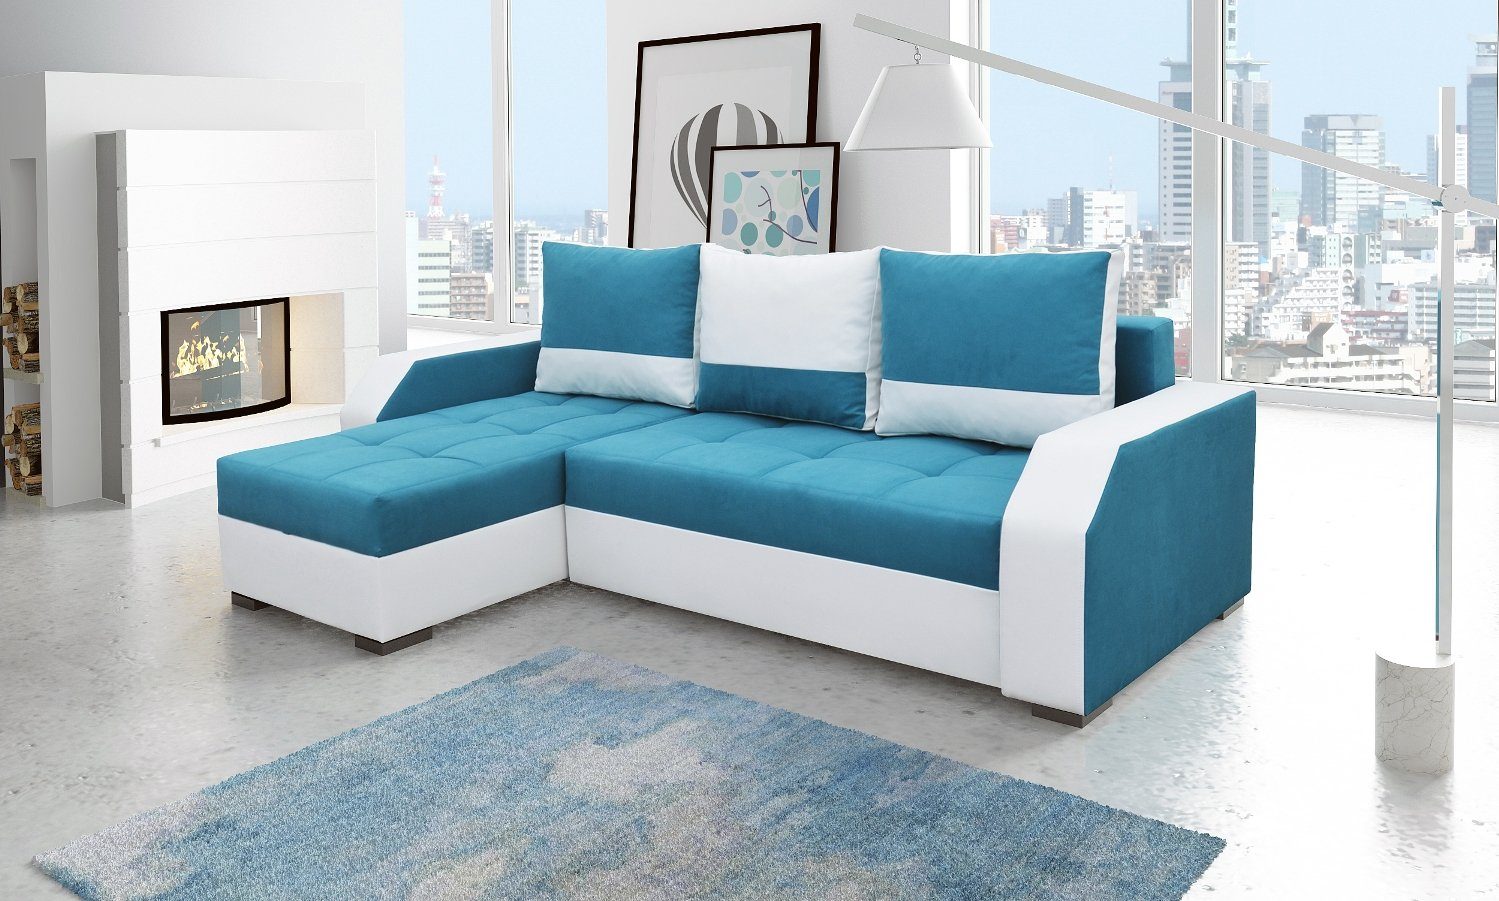 JVmoebel Ecksofa, Design Ecksofa Bettfunktion Couch Leder Textil Polster Sofas Couchen Blau / Weiß | Ecksofas